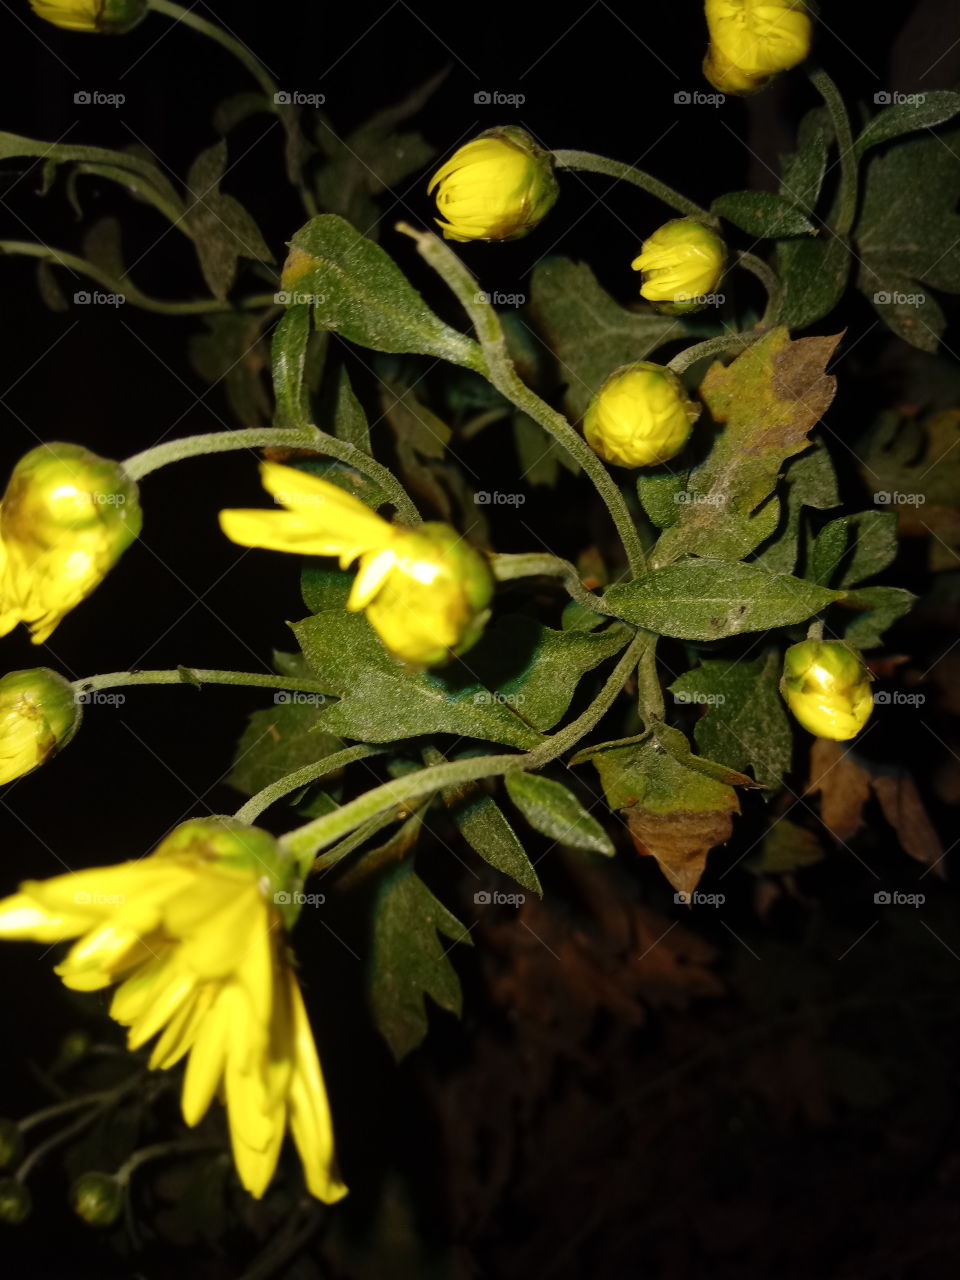 Buds of chrysanthemum